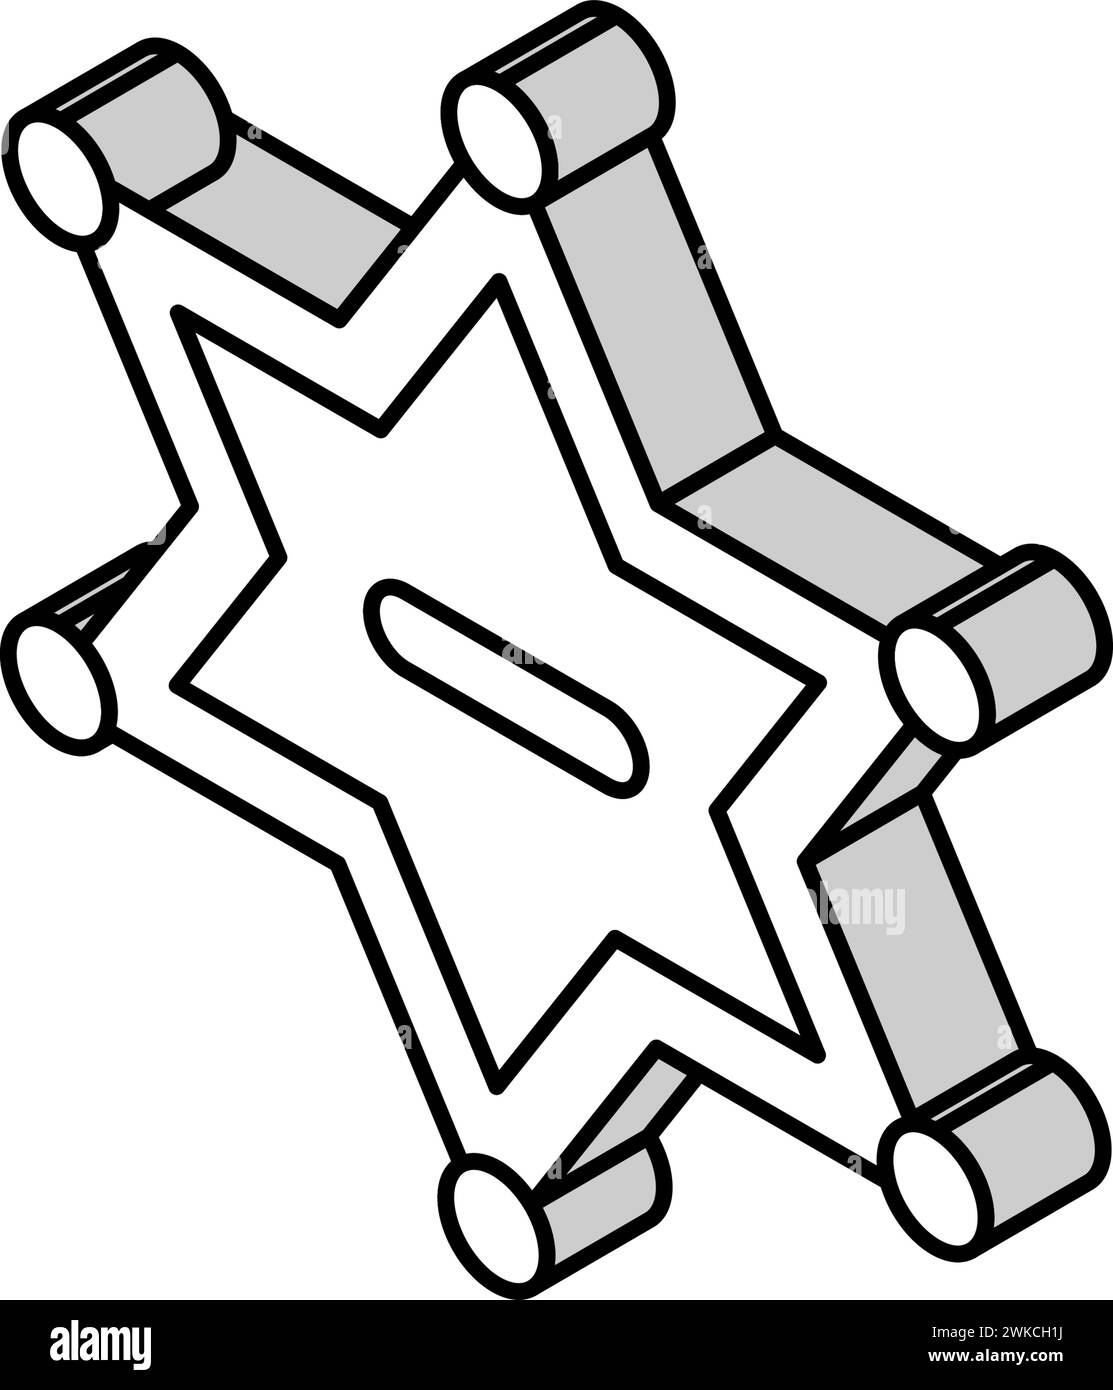 immagine vettoriale dell'icona isometrica dello sceriffo del badge Illustrazione Vettoriale